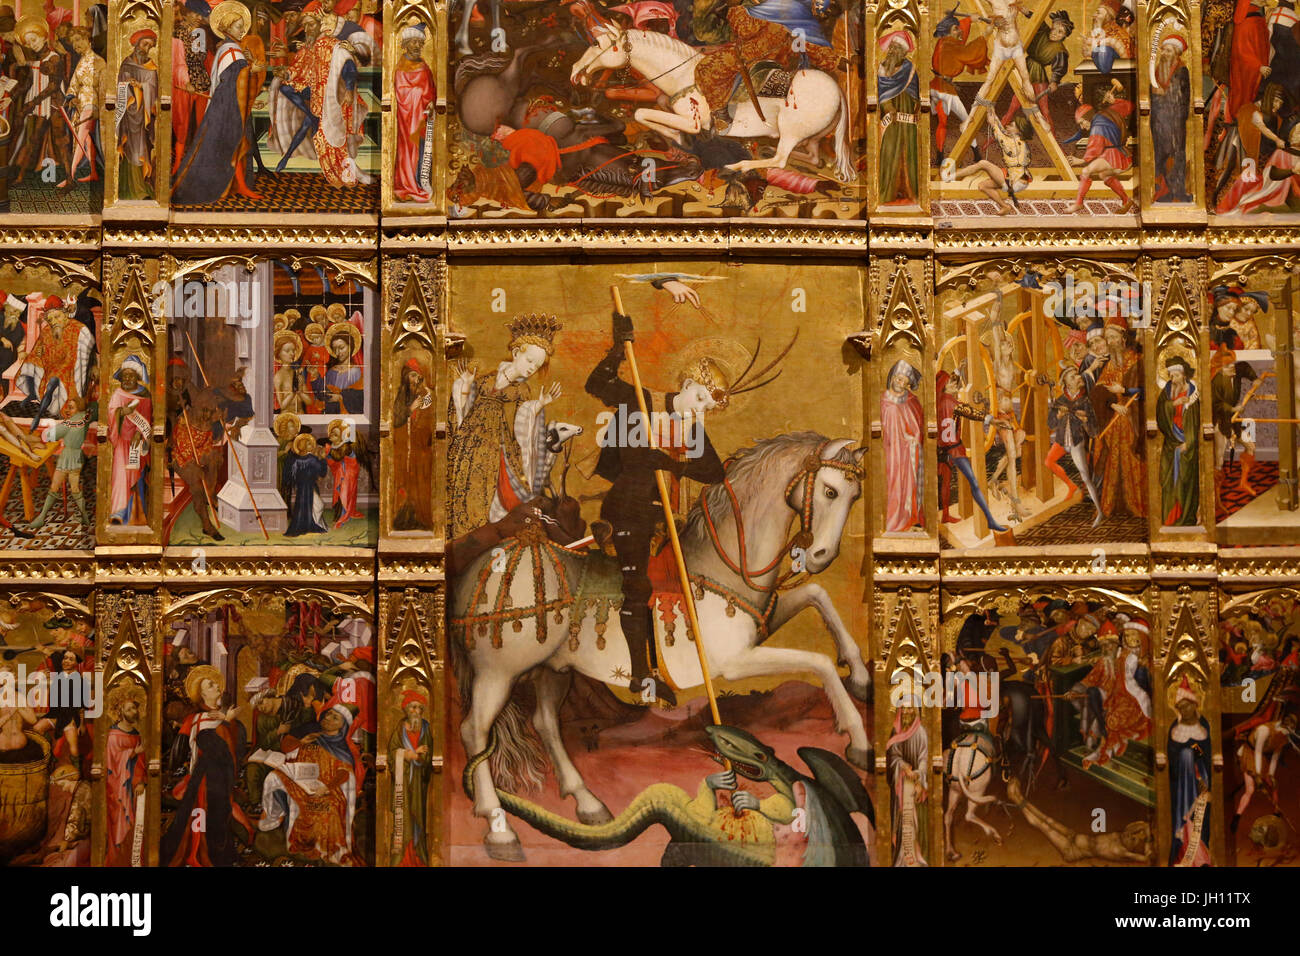 Das Victoria and Albert Museum. Altarbild des Heiligen Georg. Spanien, ca. 1410. Tempera und Vergoldung auf Kiefer. Vereinigtes Königreich. Stockfoto